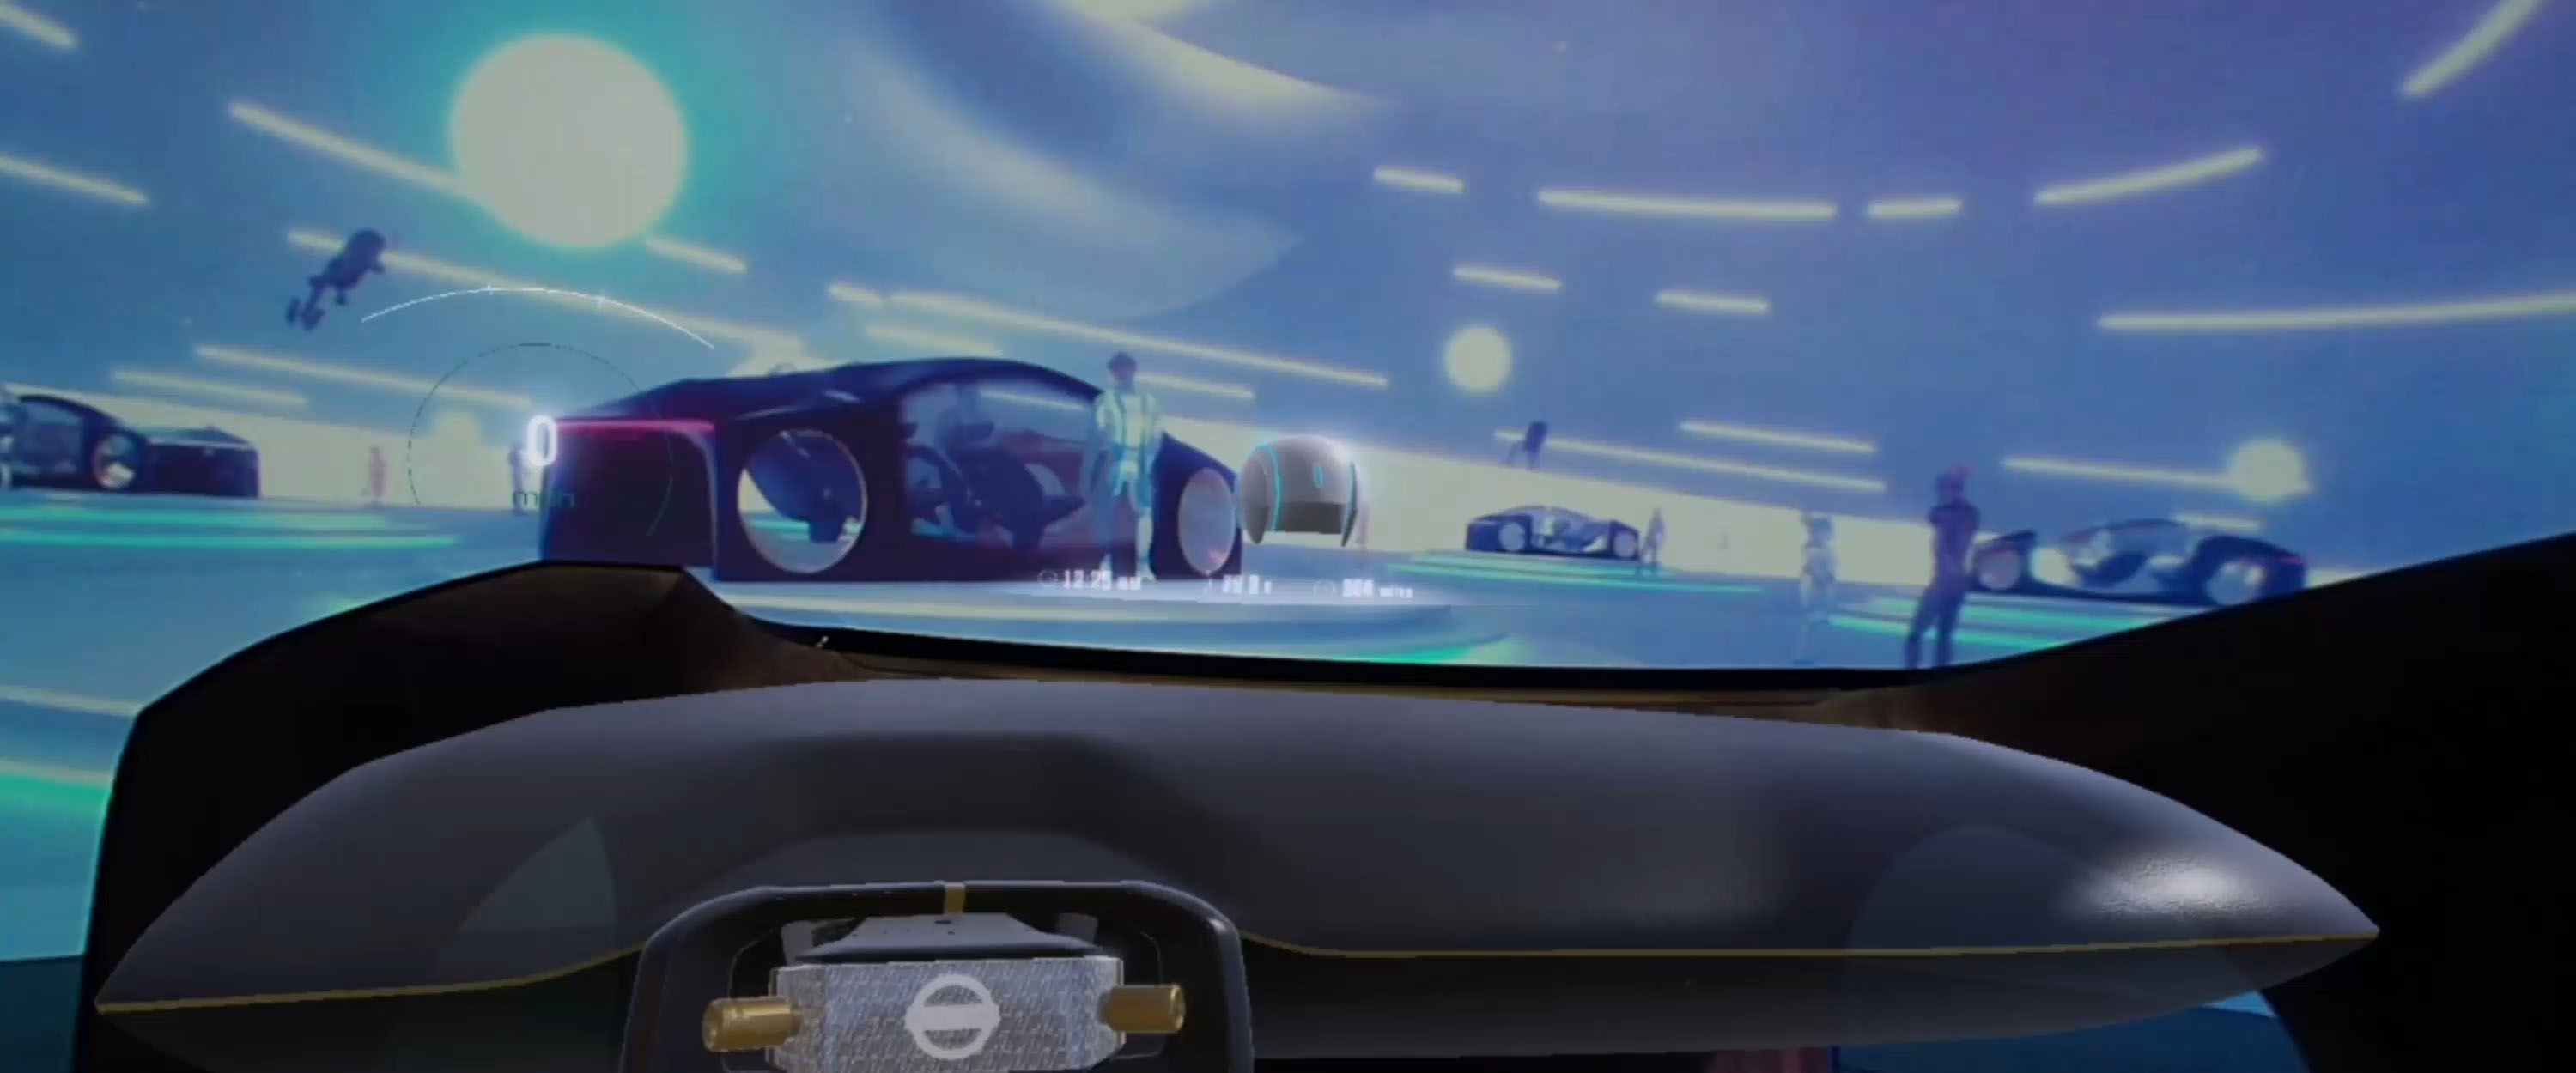 Nissan IV2 Simülatörü, Las Vegas Nevada'daki CES'te tanıtıldı